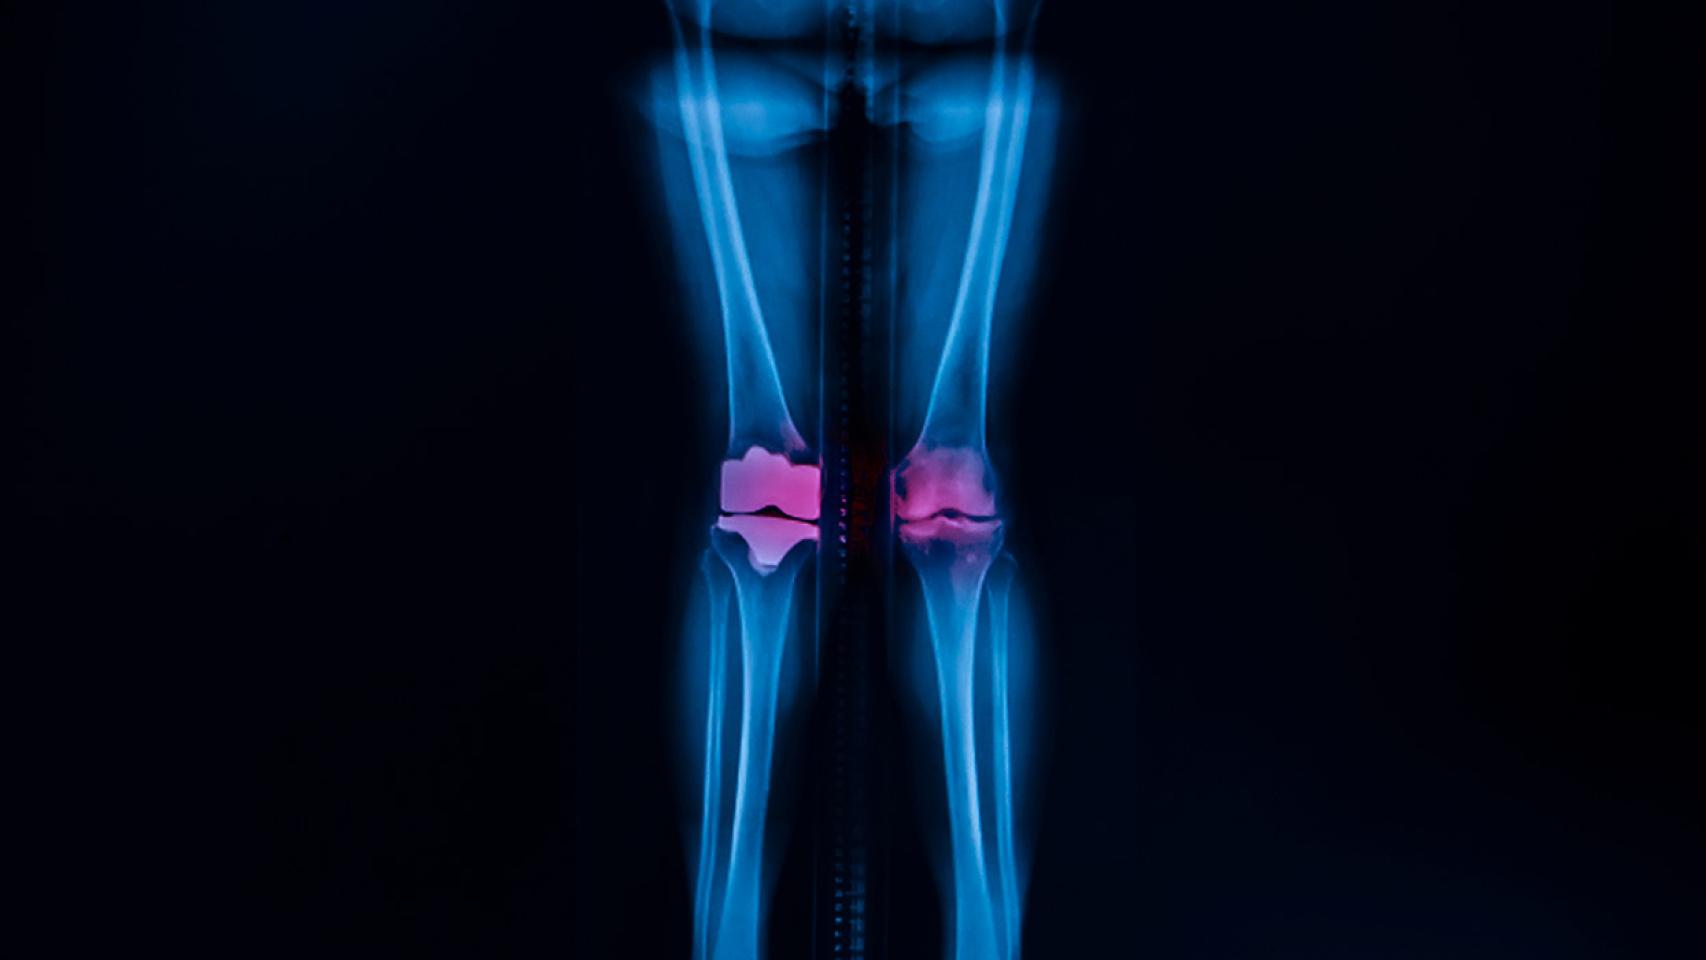 Este nuevo material mejorará las prótesis de rodilla y cadera.